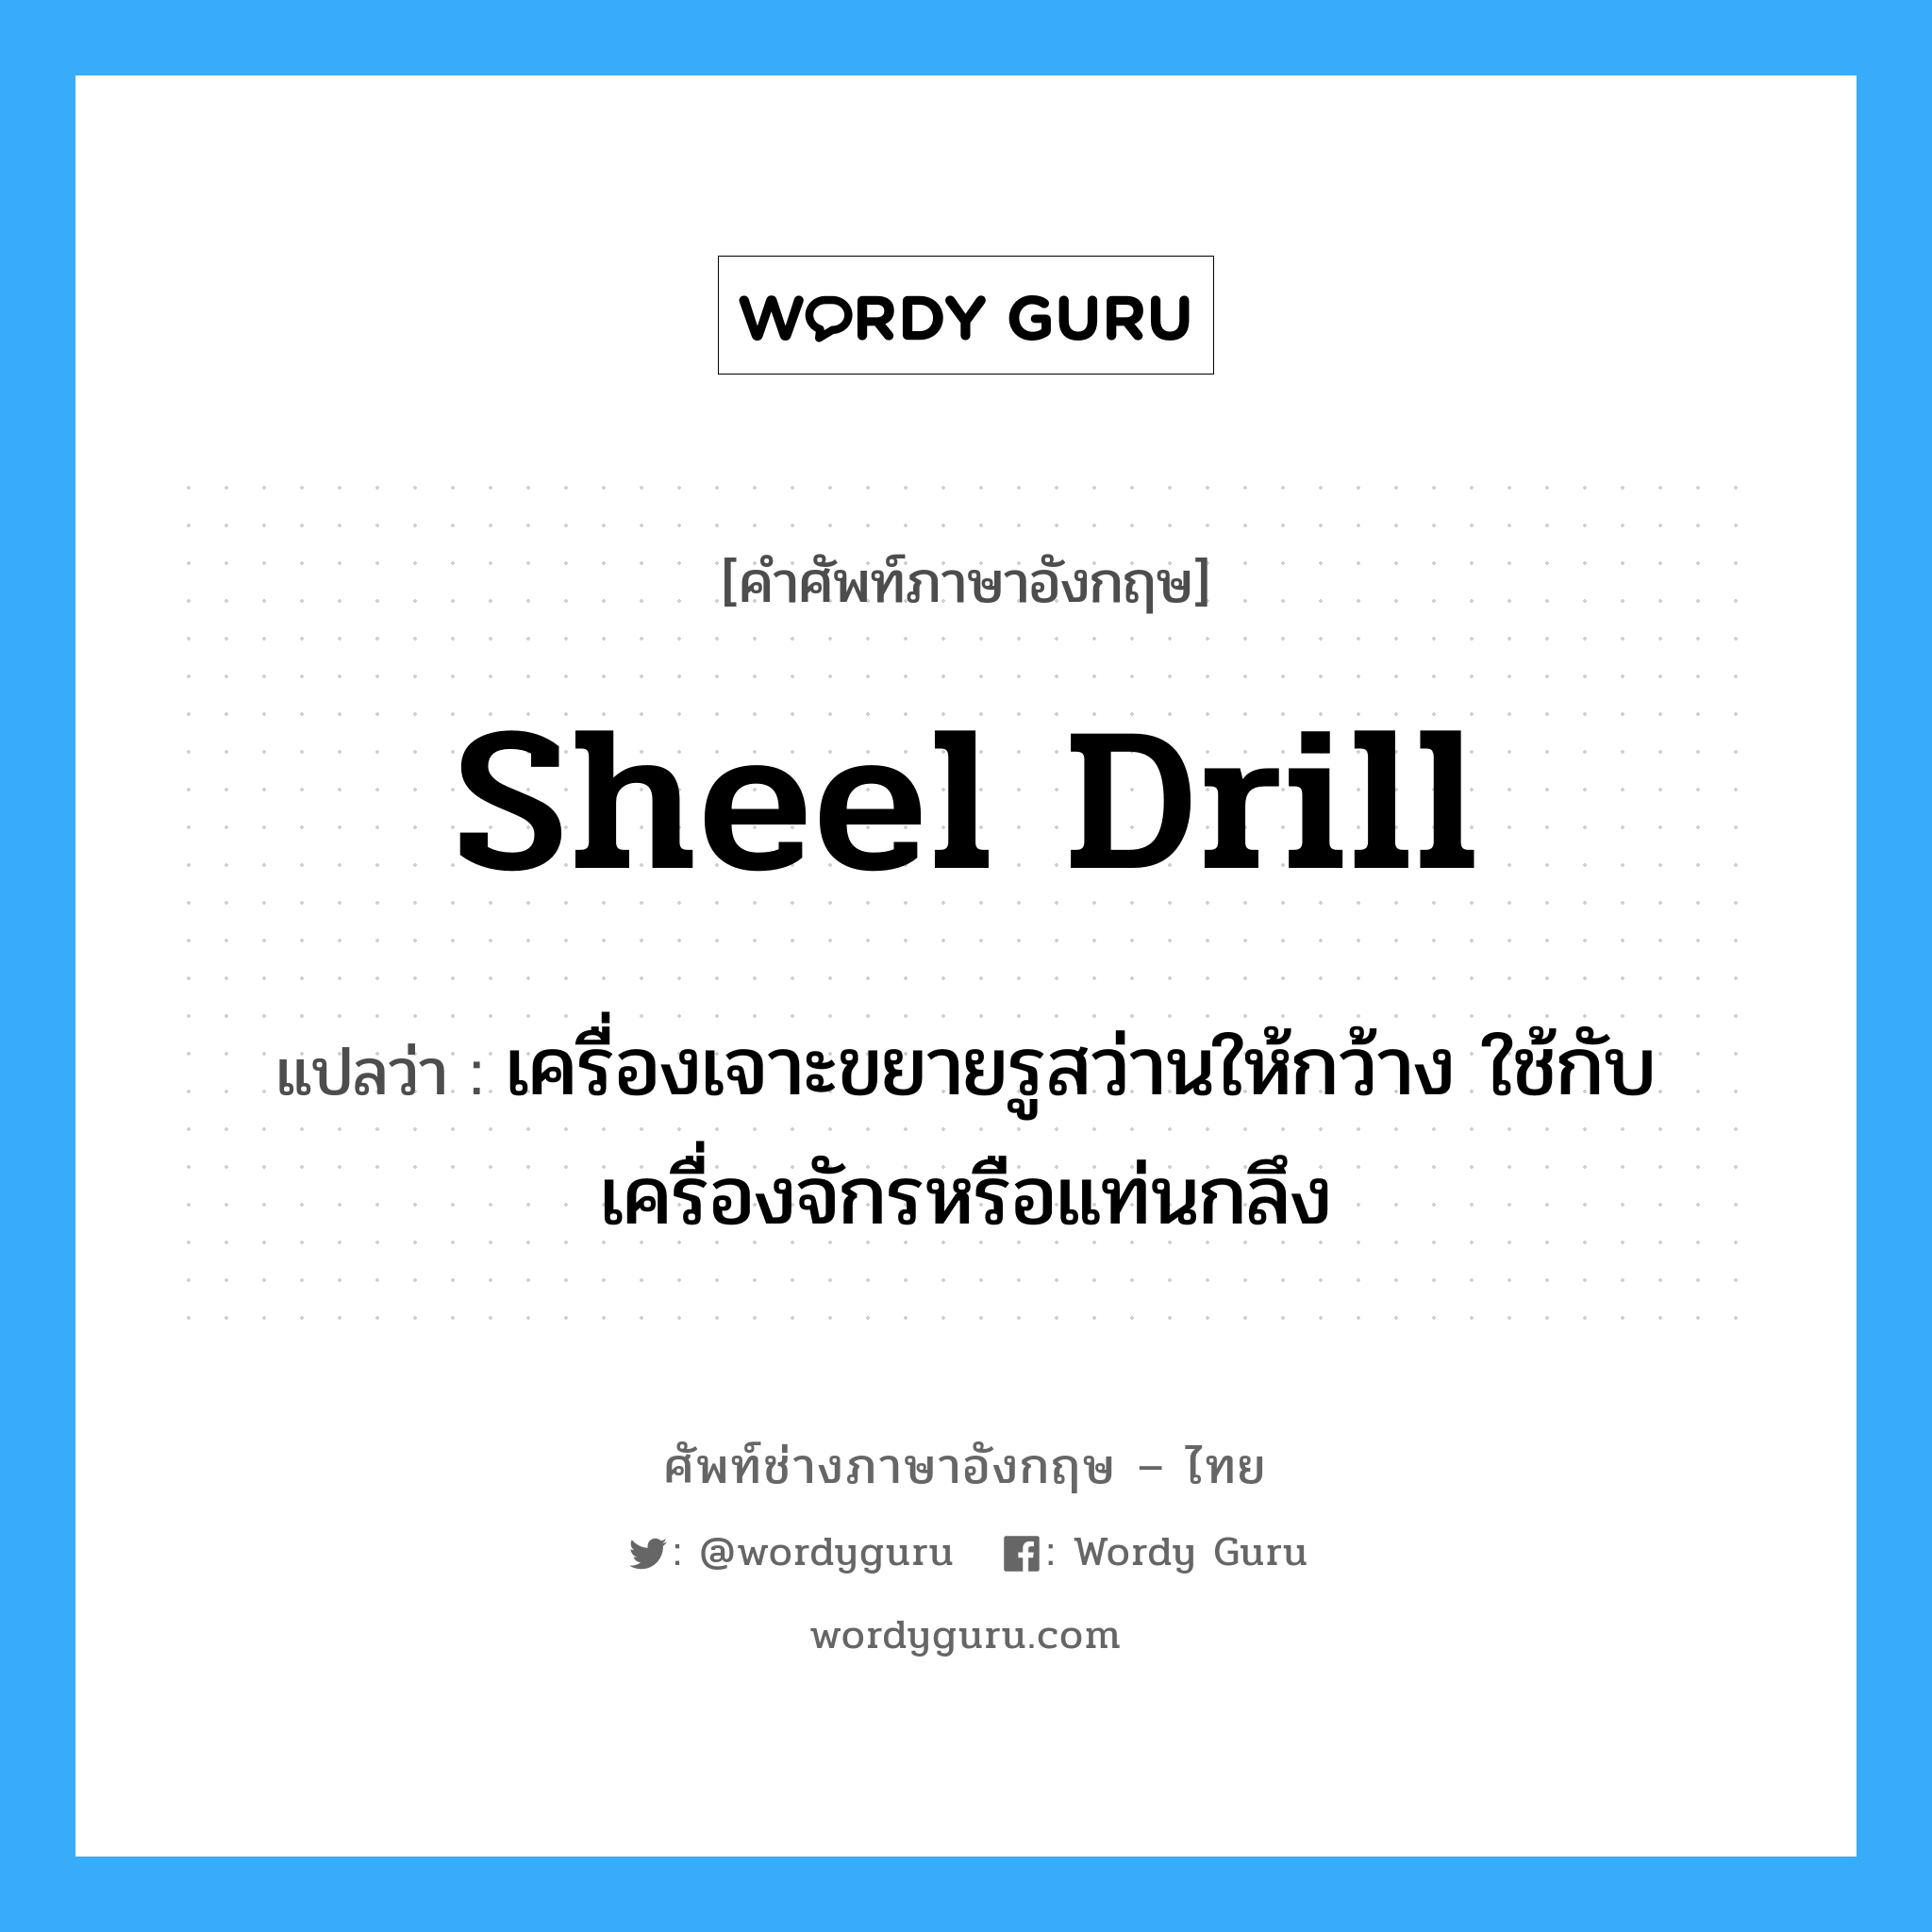 sheel drill แปลว่า?, คำศัพท์ช่างภาษาอังกฤษ - ไทย sheel drill คำศัพท์ภาษาอังกฤษ sheel drill แปลว่า เครื่องเจาะขยายรูสว่านให้กว้าง ใช้กับเครื่องจักรหรือแท่นกลึง